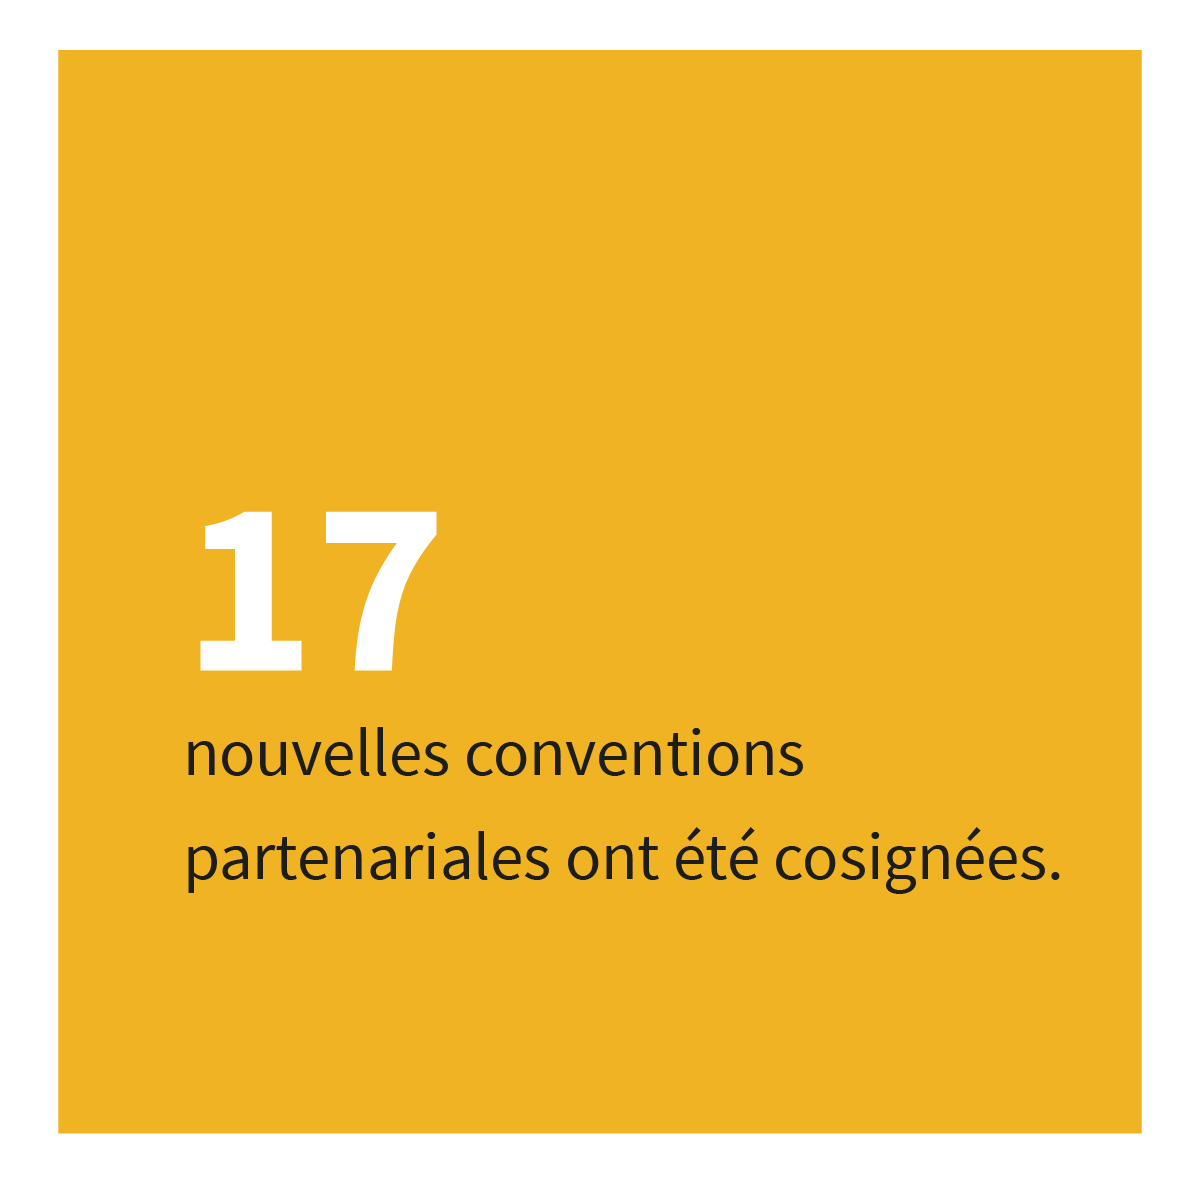 17 nouvelles conventions partenariales ont été cosignées.